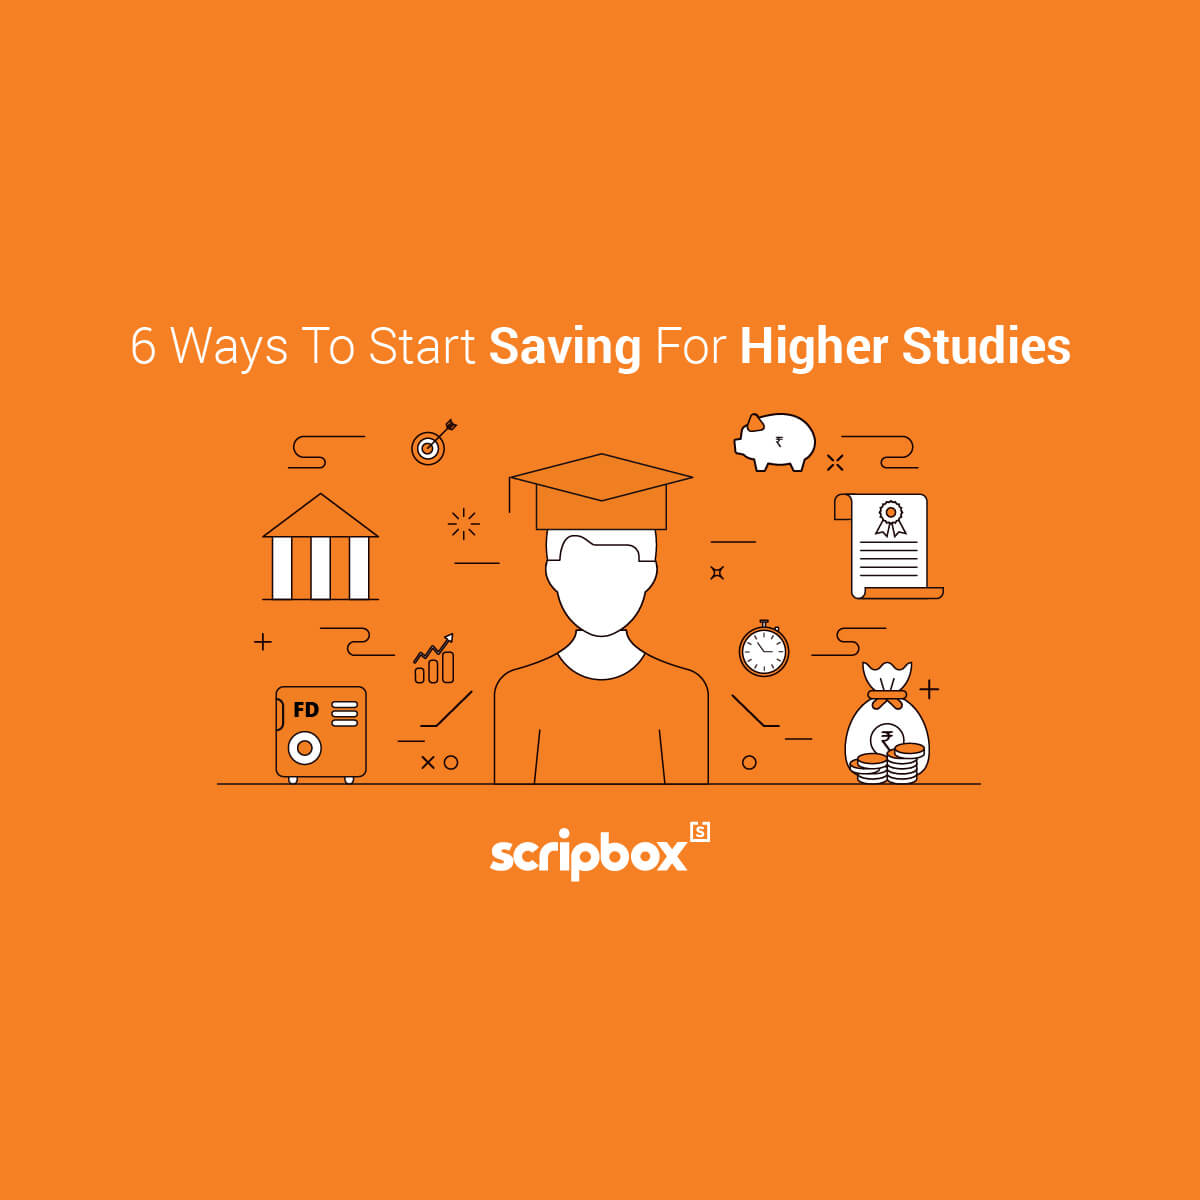 6 ways to start saving for higher studies